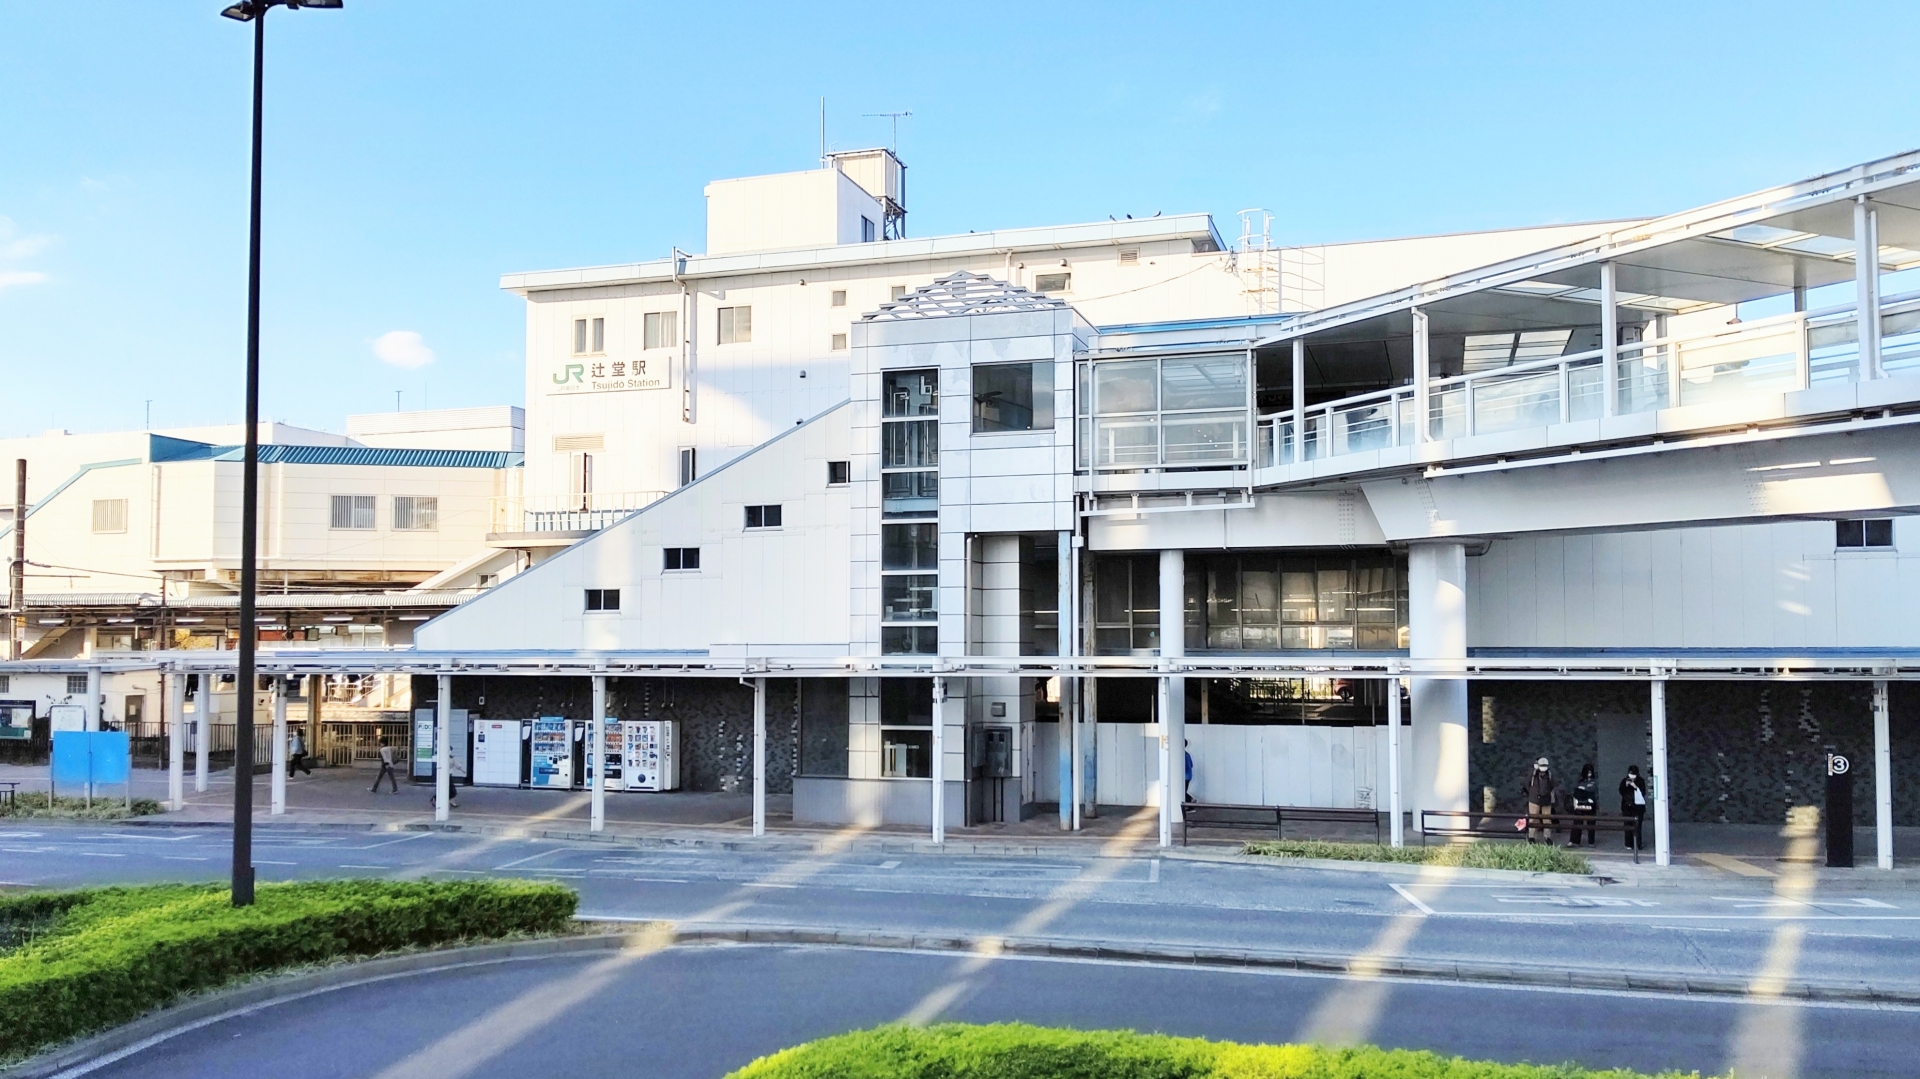 住宅・観光・産業・文教としてとして栄える藤沢市。良好な自然・住・教育環境を求める人たちの転居・移住が後を絶たない。画像はJR辻堂駅。